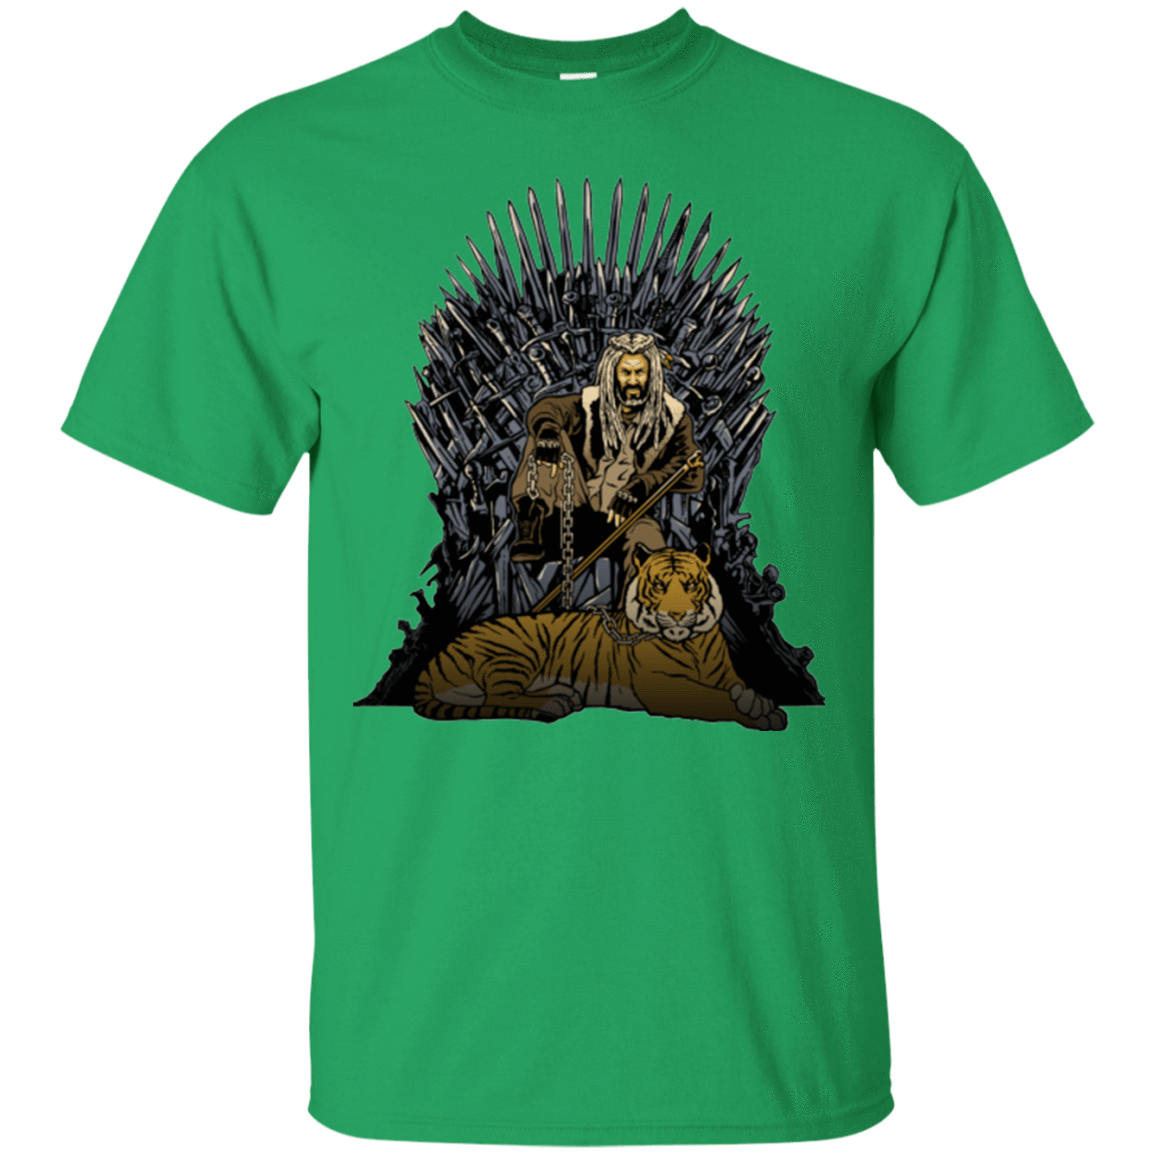 T-Shirts Irish Green / Small King and Tiger T-Shirt